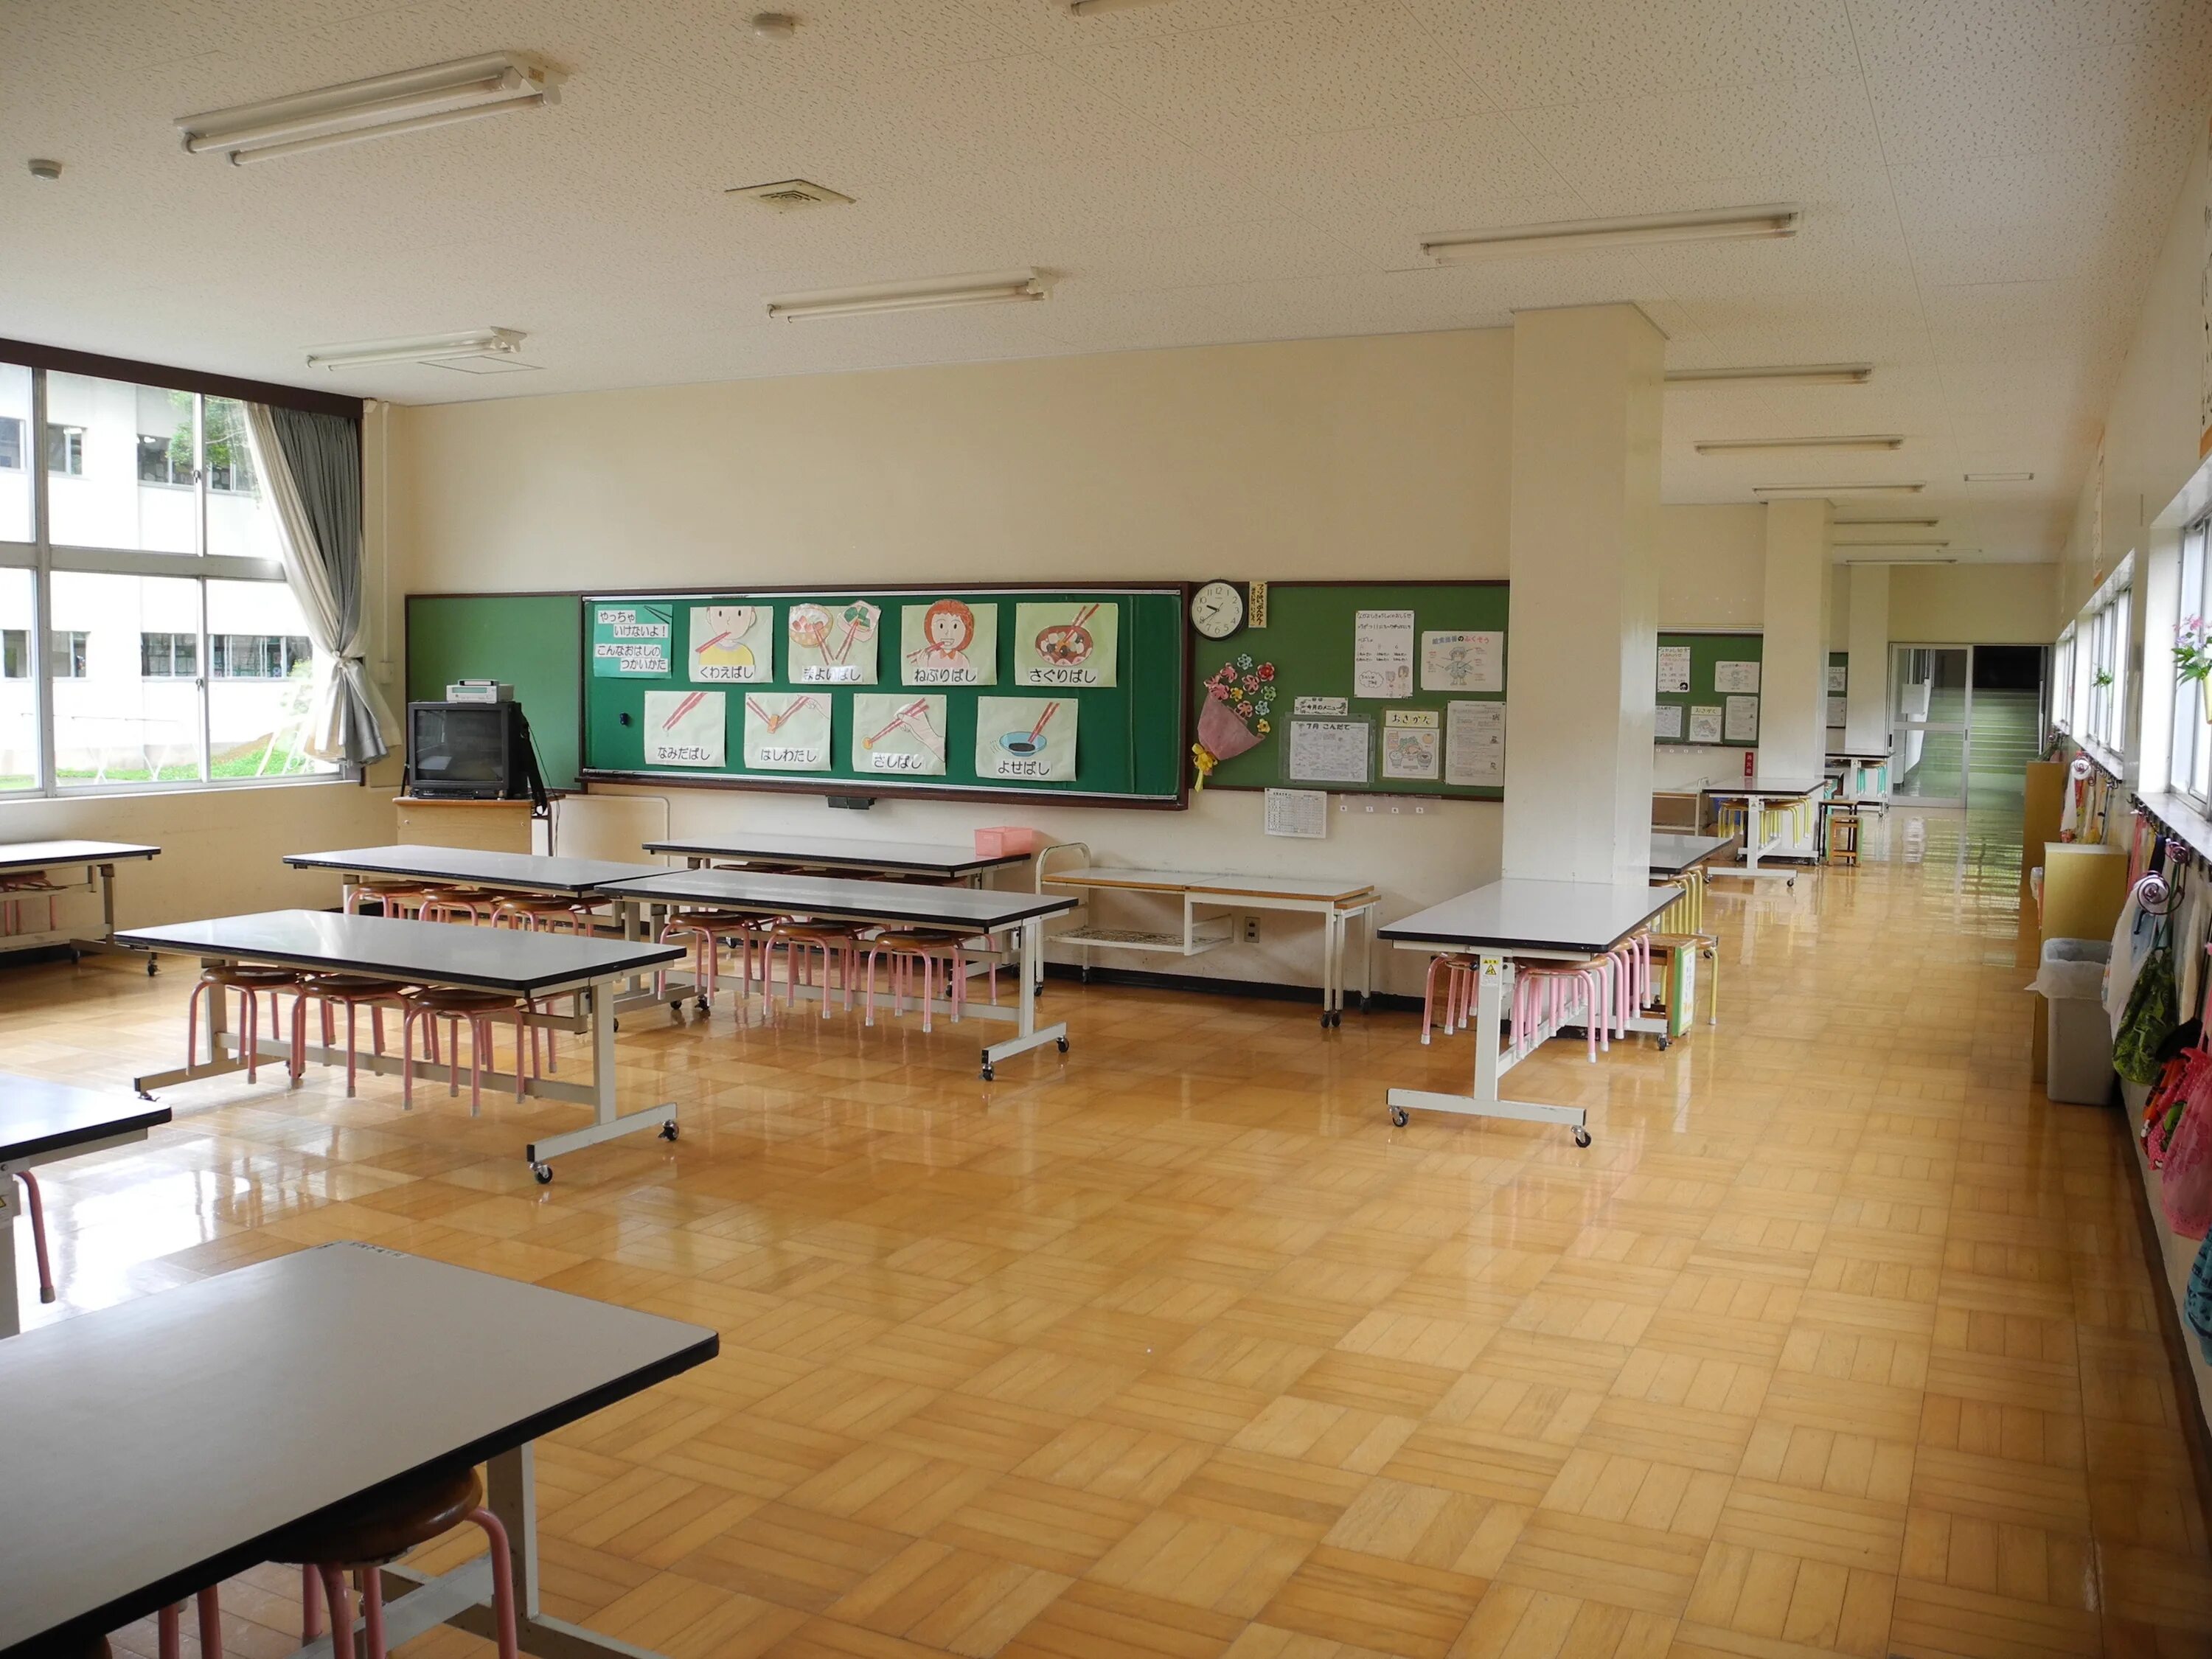 Красивый школьный класс. Классная комната в школе. Учительская комната в школе. Интерьер классной комнаты в школе. Современные классные комнаты в школе.